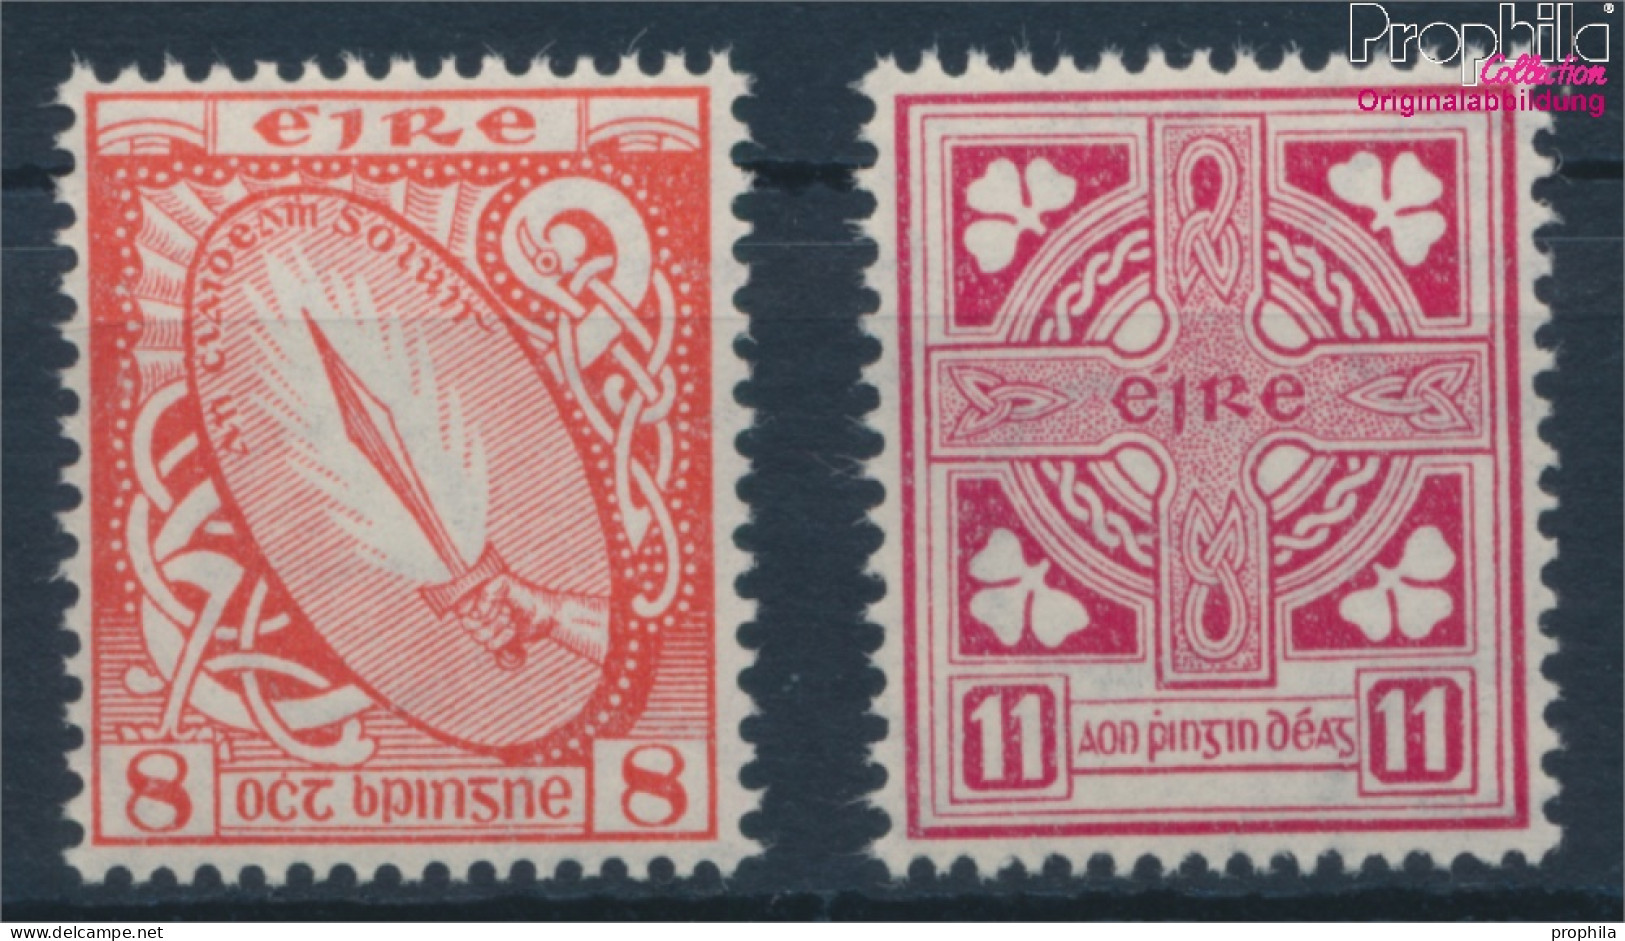 Irland 106-107 (kompl.Ausg.) Postfrisch 1948 Symbole (10398339 - Unused Stamps